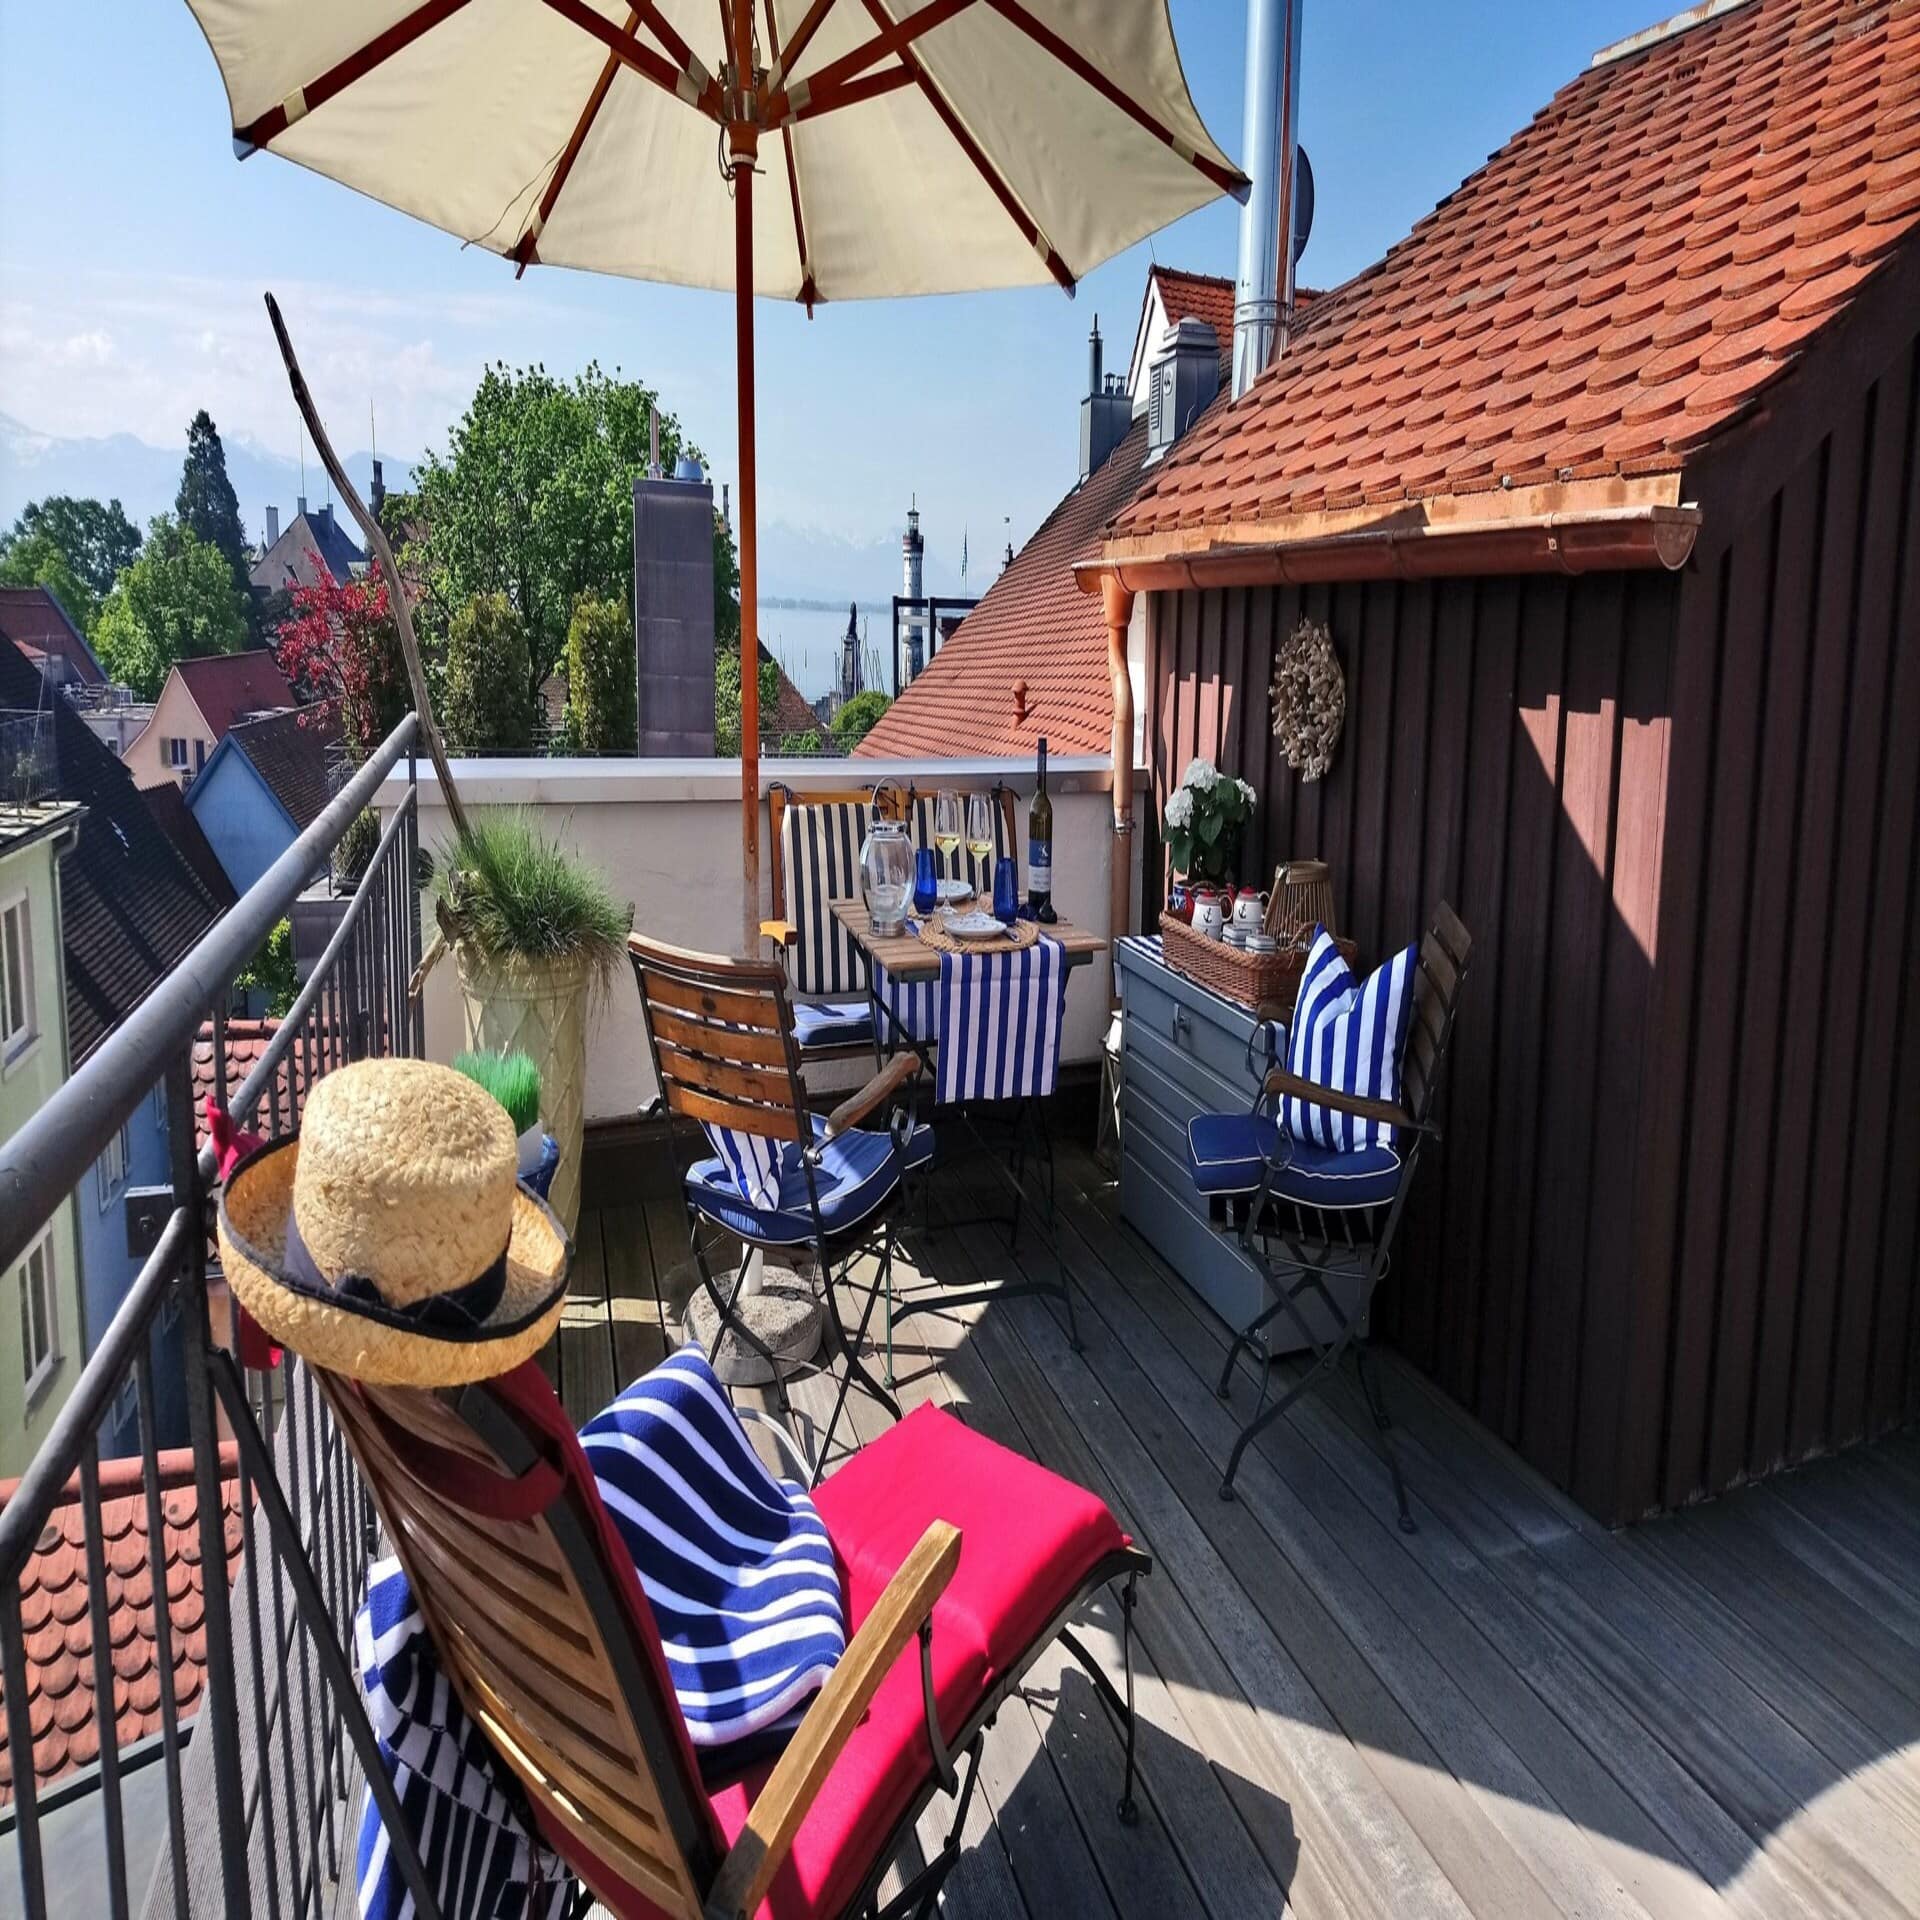 Dachterrasse mit Tisch, Stühlen, Liegestuhl und Sonnenschirm. Blick über die Häuserdächer von Lindau und auf den Bodensee. 